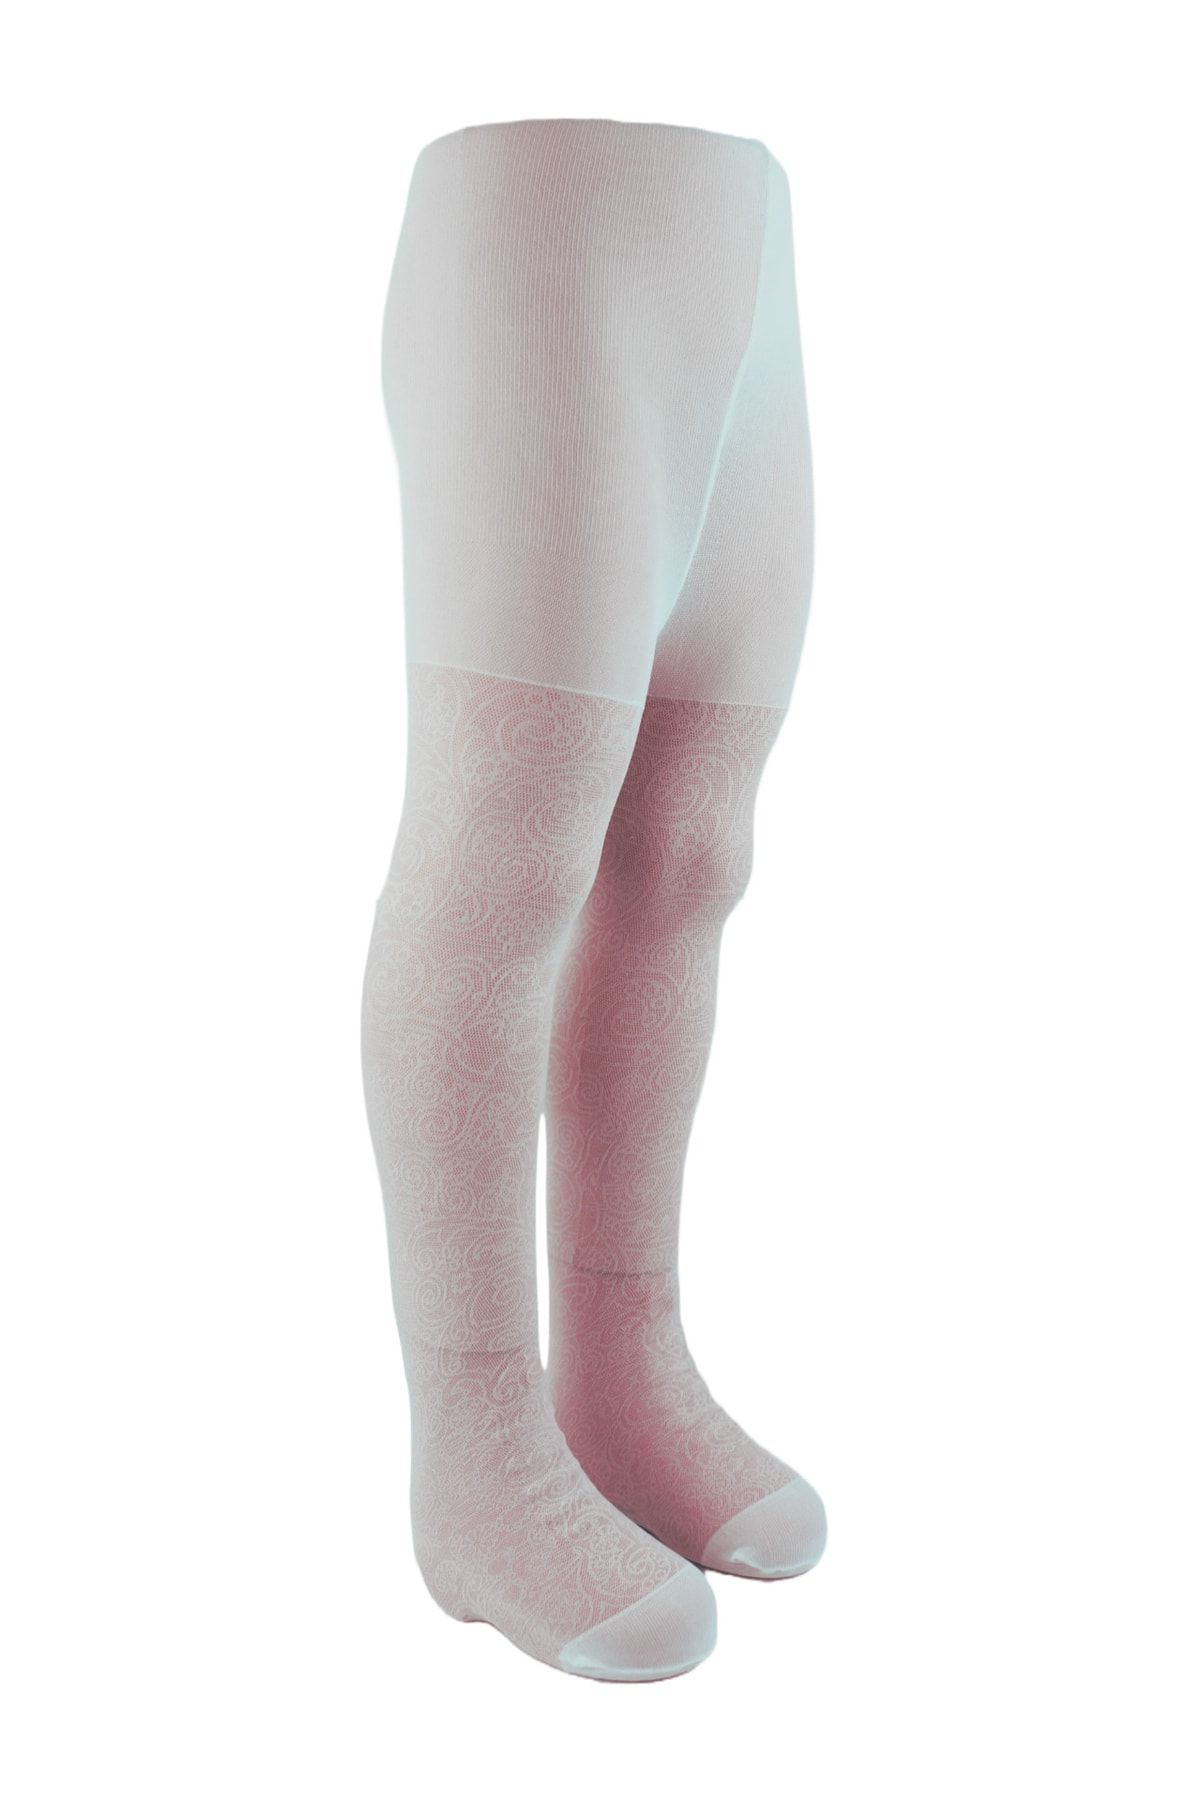 Marie Bella Jakkarlı Kız Çocuk Beyaz Ince Külotlu Çorap Daire Deseni J-120c